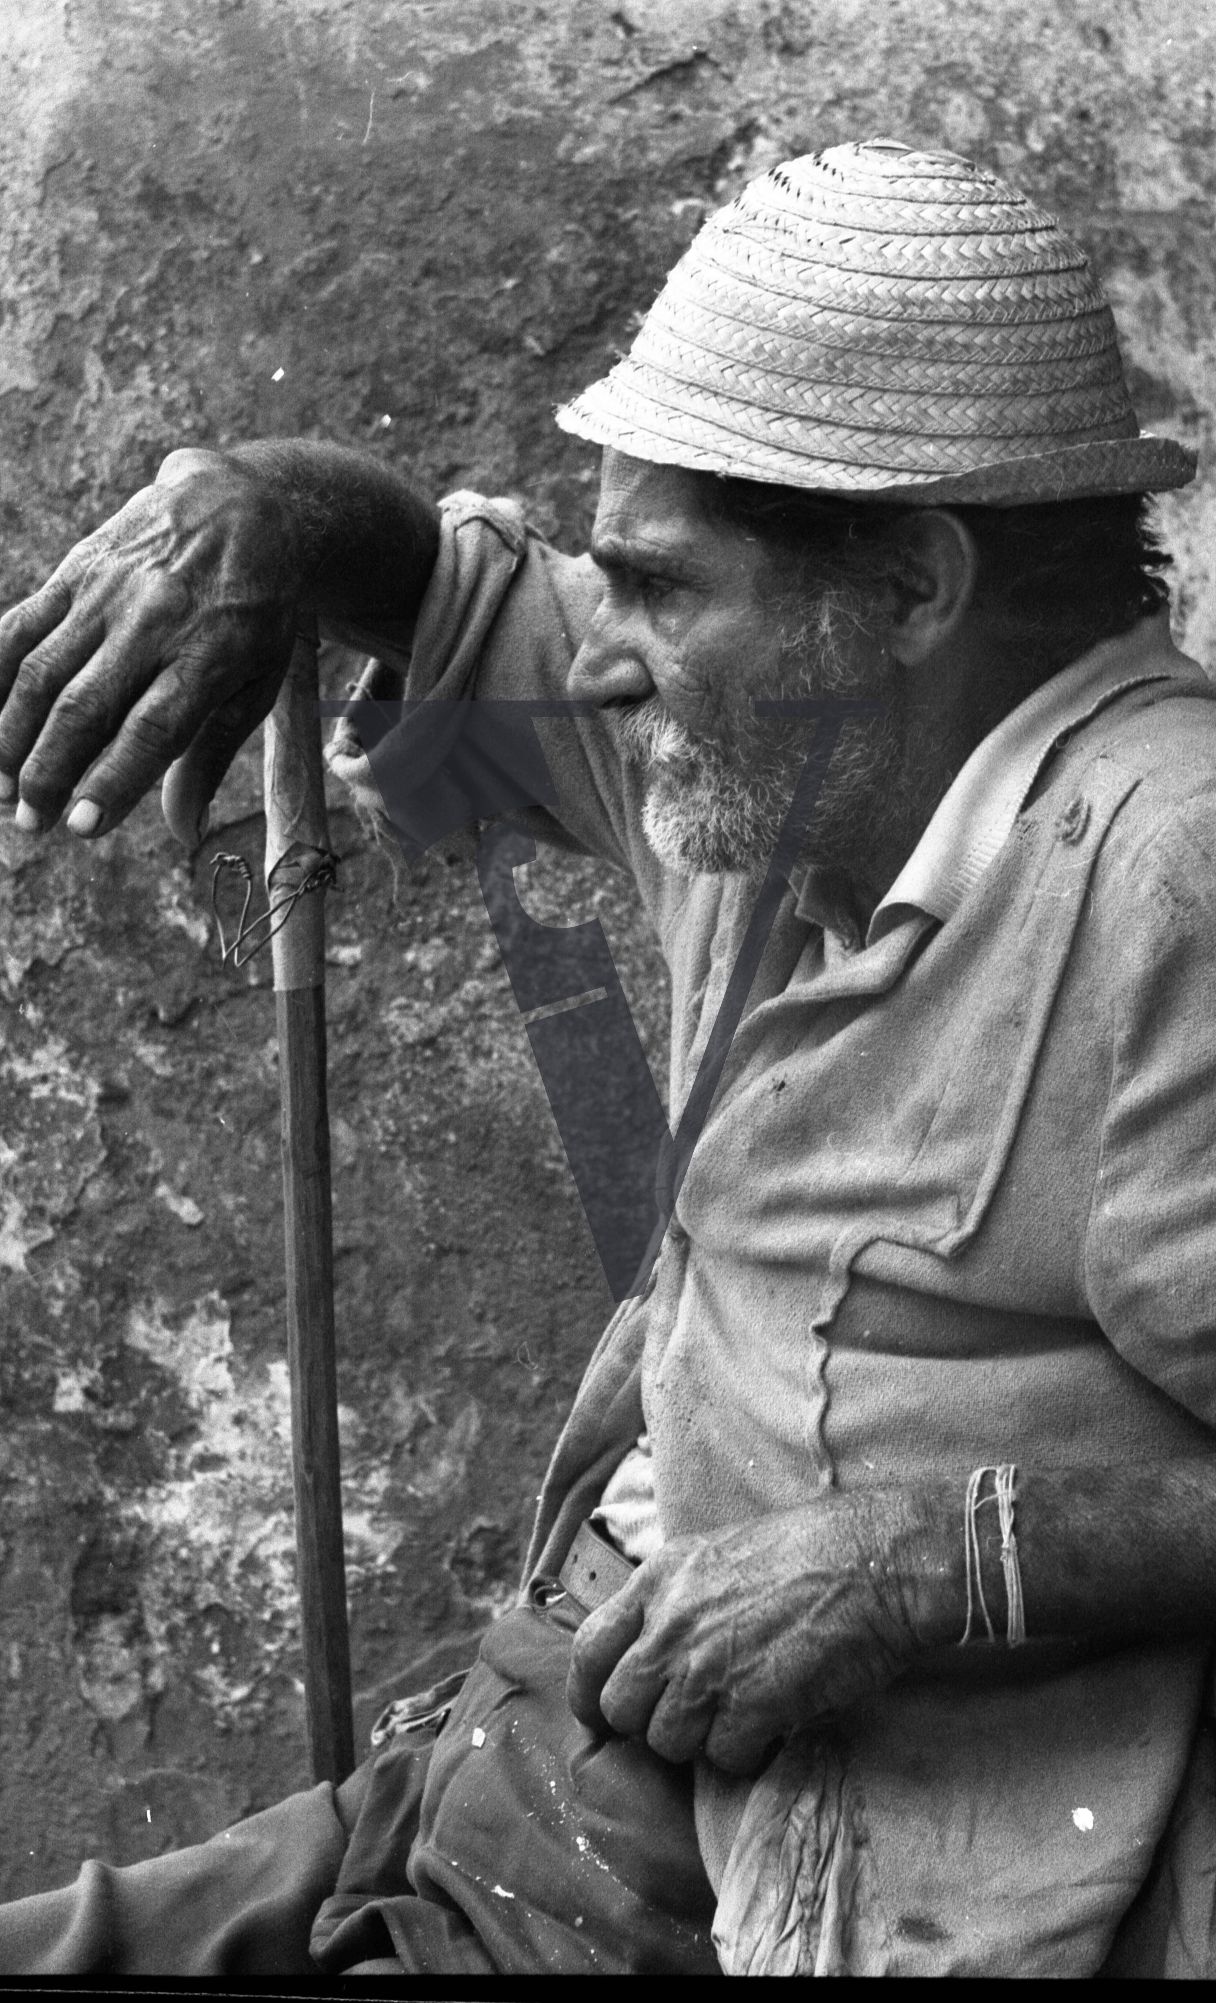 Cuba, Cane cutting, elderly man sitting by stick, resting.